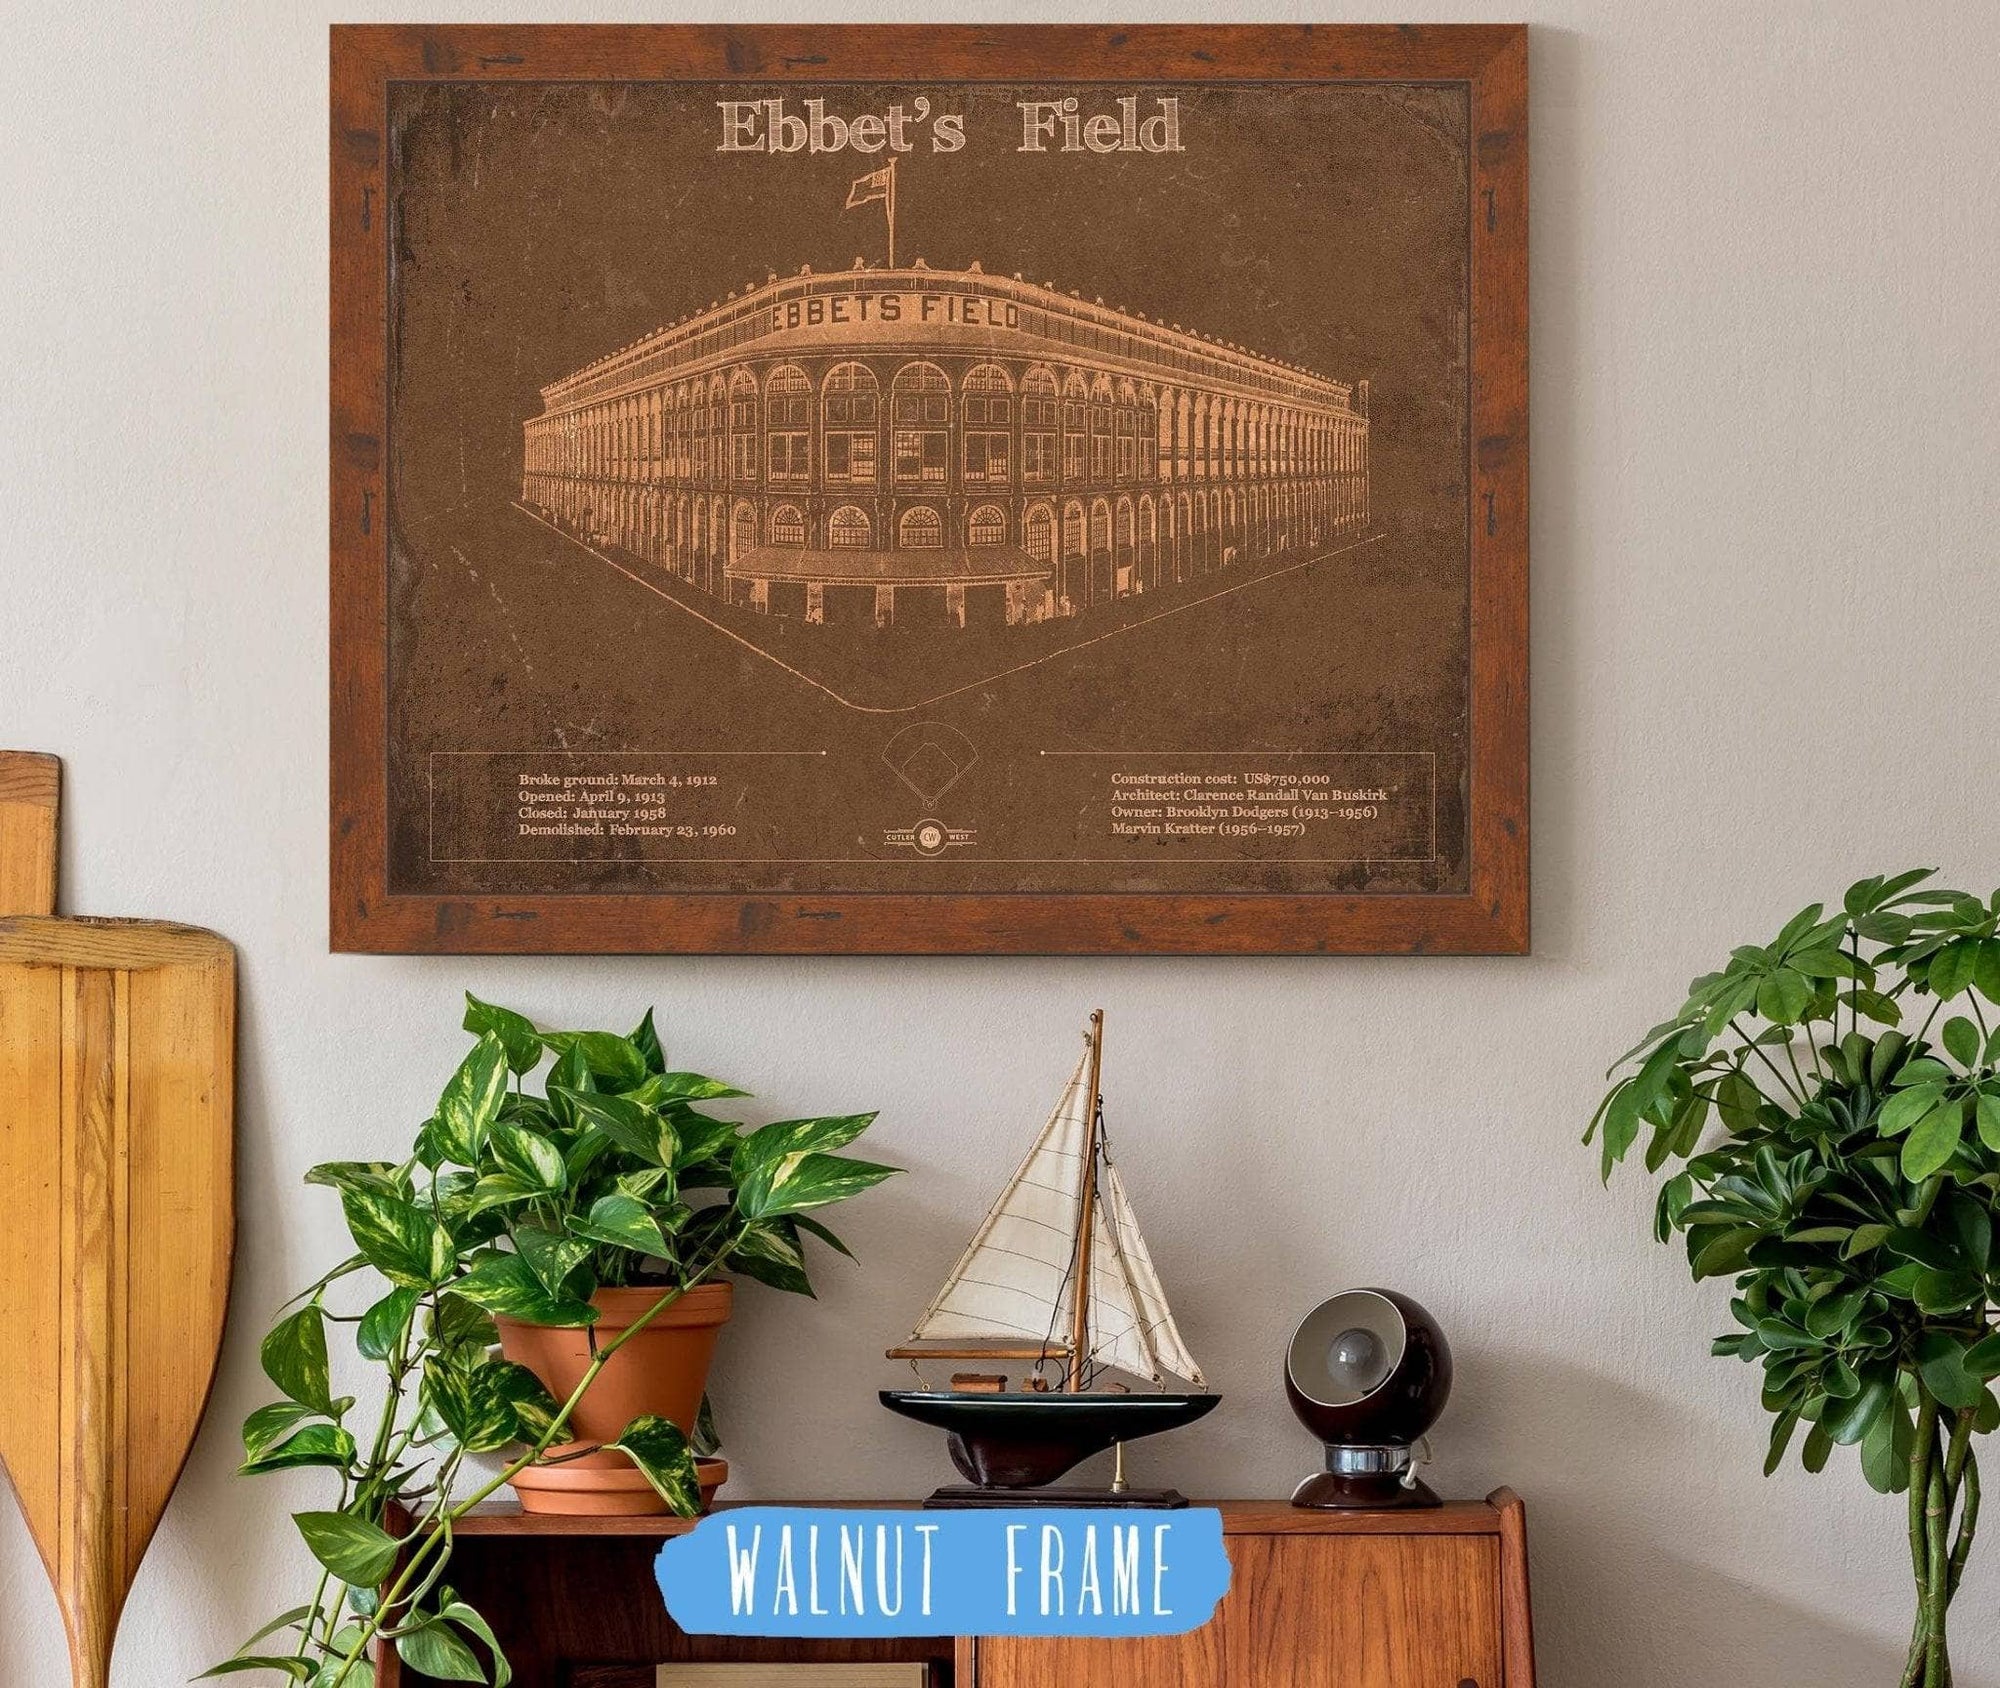 Cutler West Baseball Collection Ebbet's Field - Vintage Brooklyn Dodgers Baseball Art